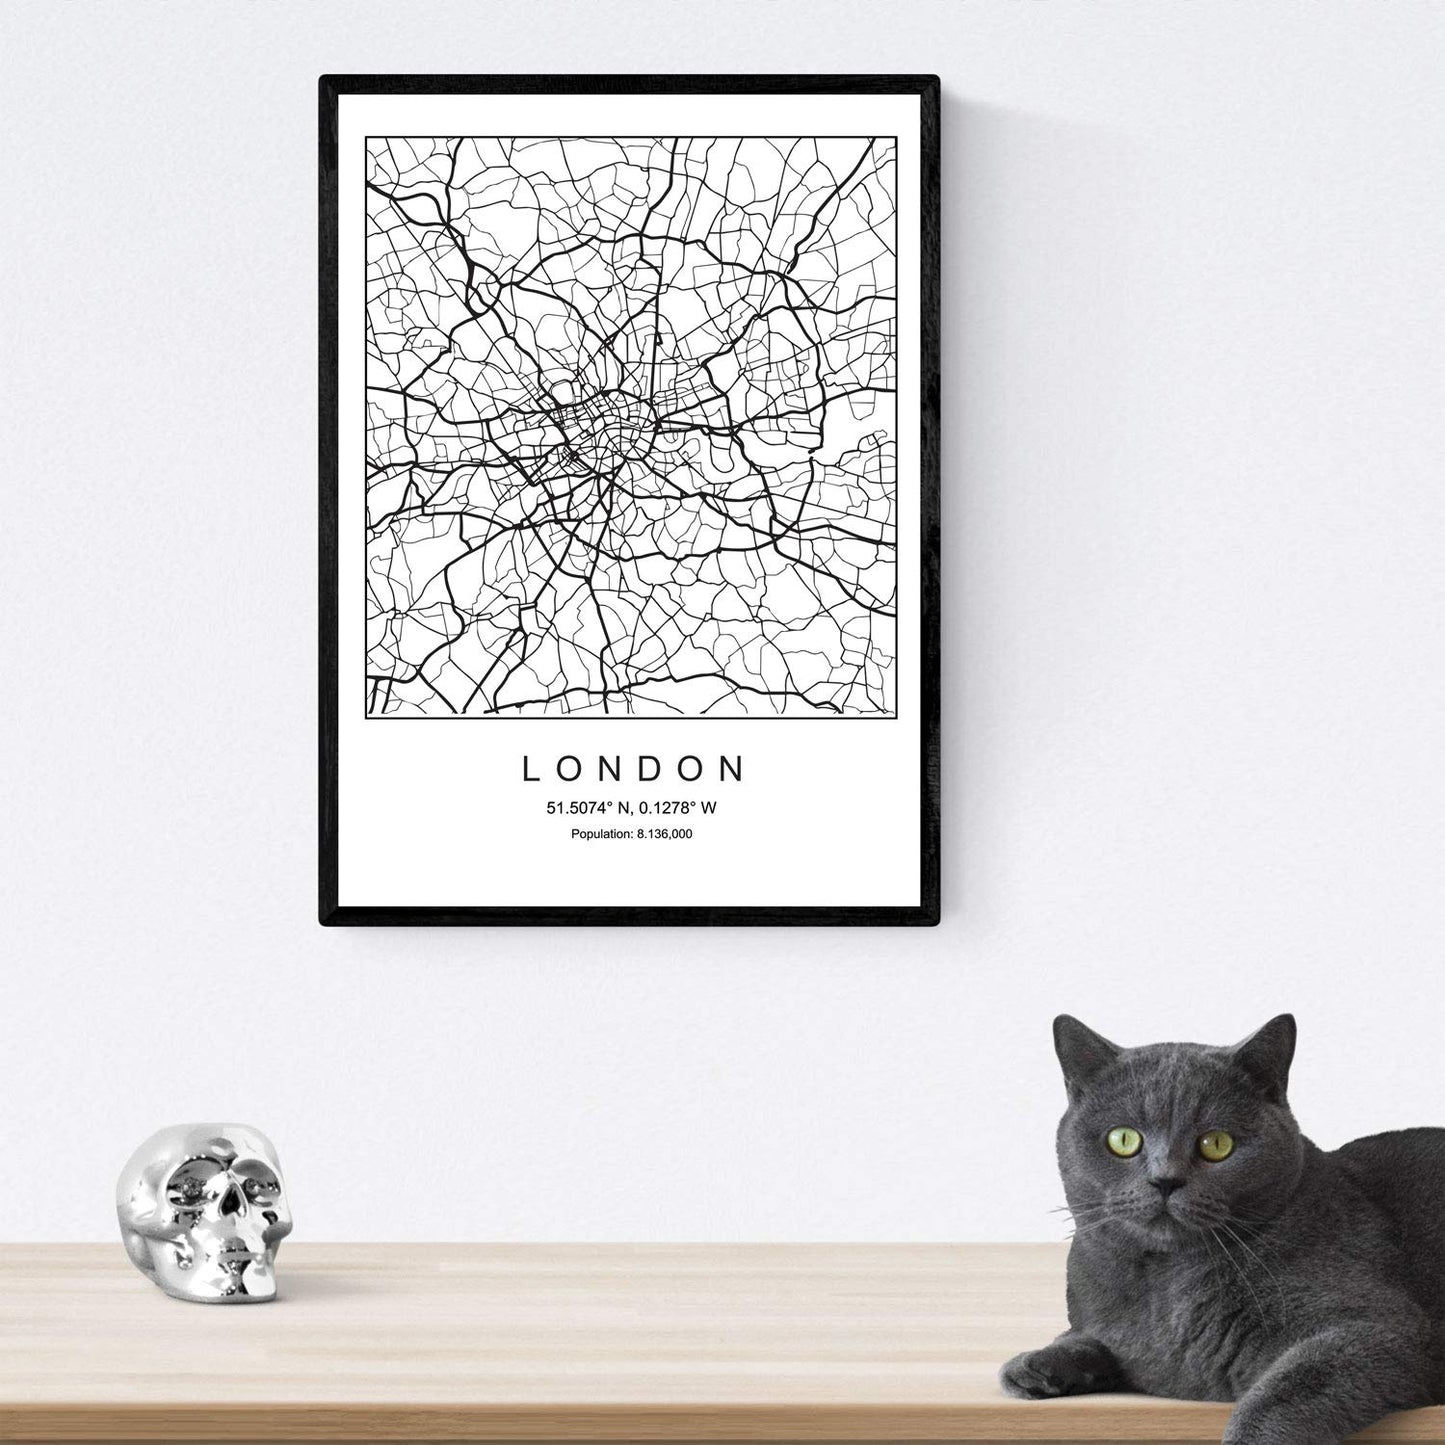 Pack de posters de Londres - El ojo. Láminas con monumentos de ciudades.-Artwork-Nacnic-Nacnic Estudio SL